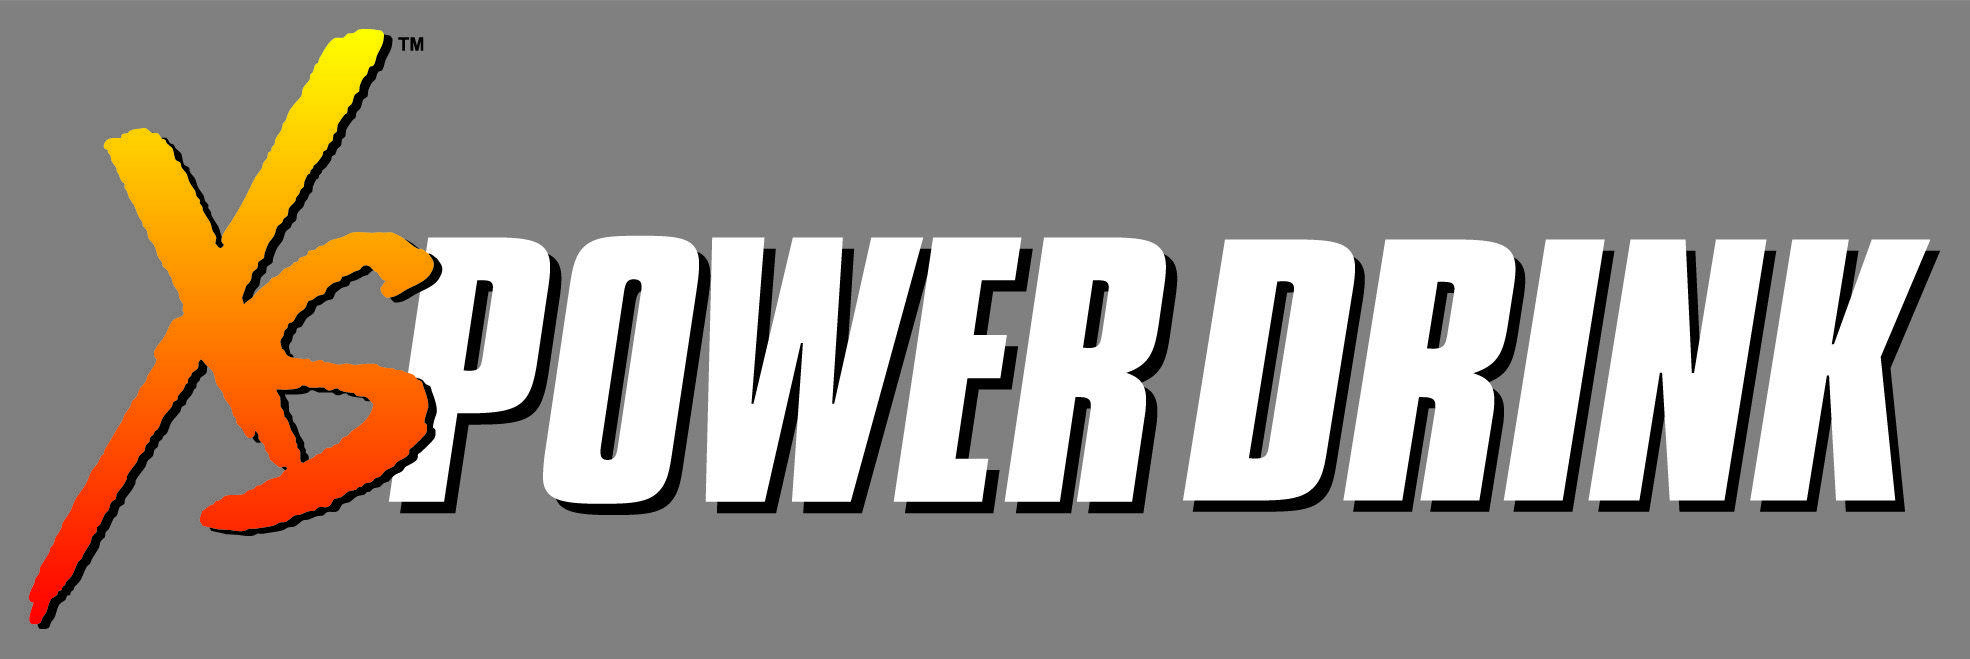 XS Power Logo - XS Power Drink | PopcornCandi